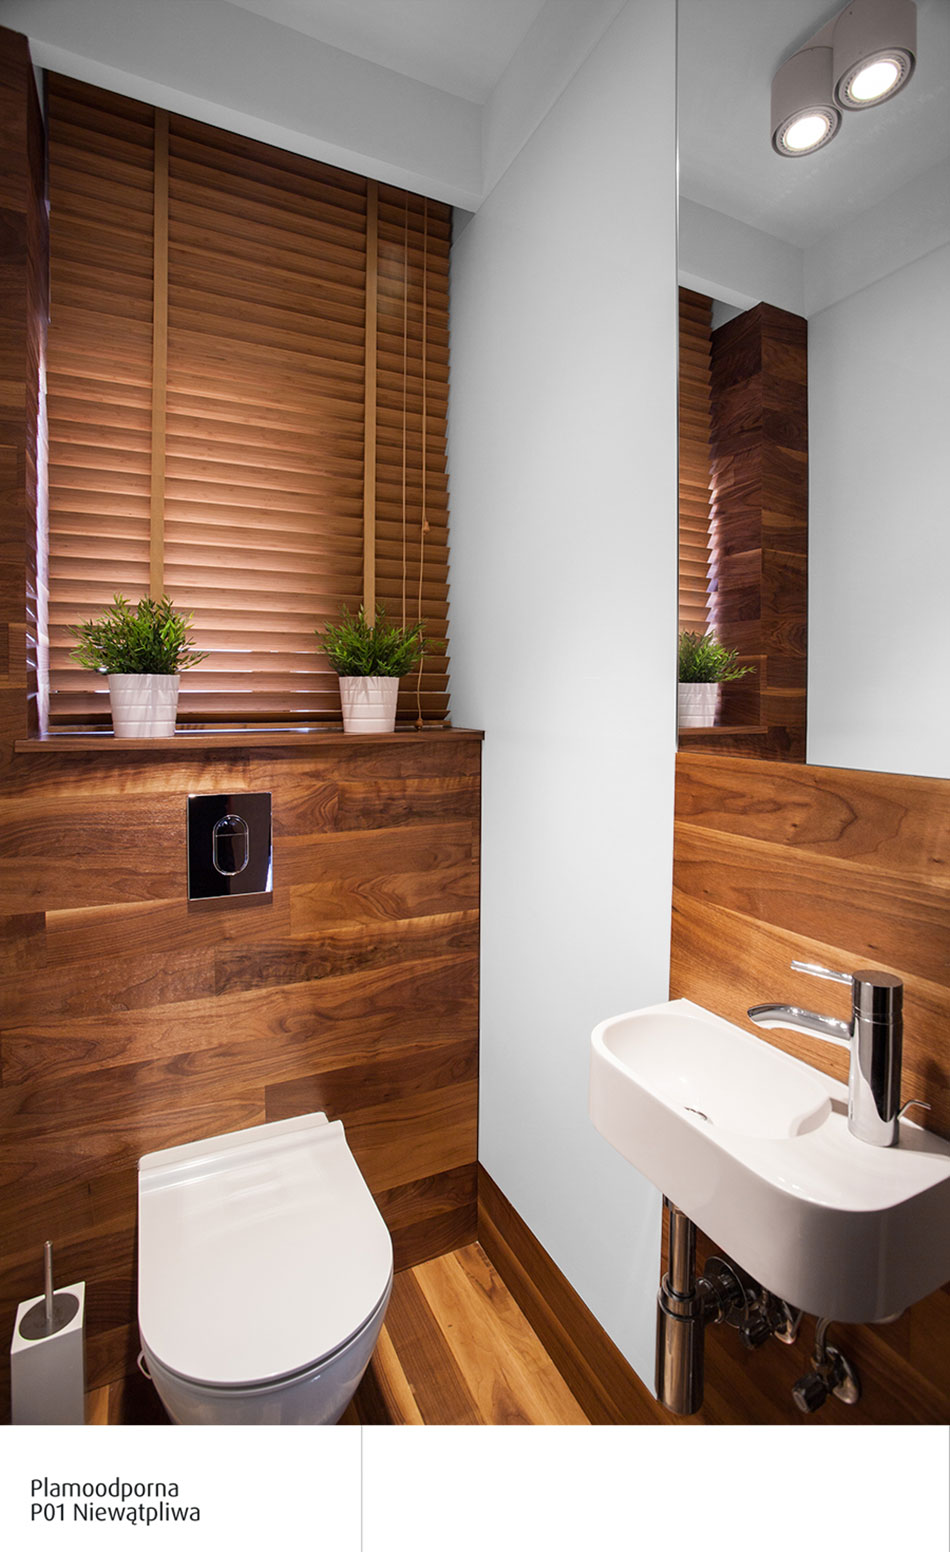 Płytki w łazience imitujące drewno